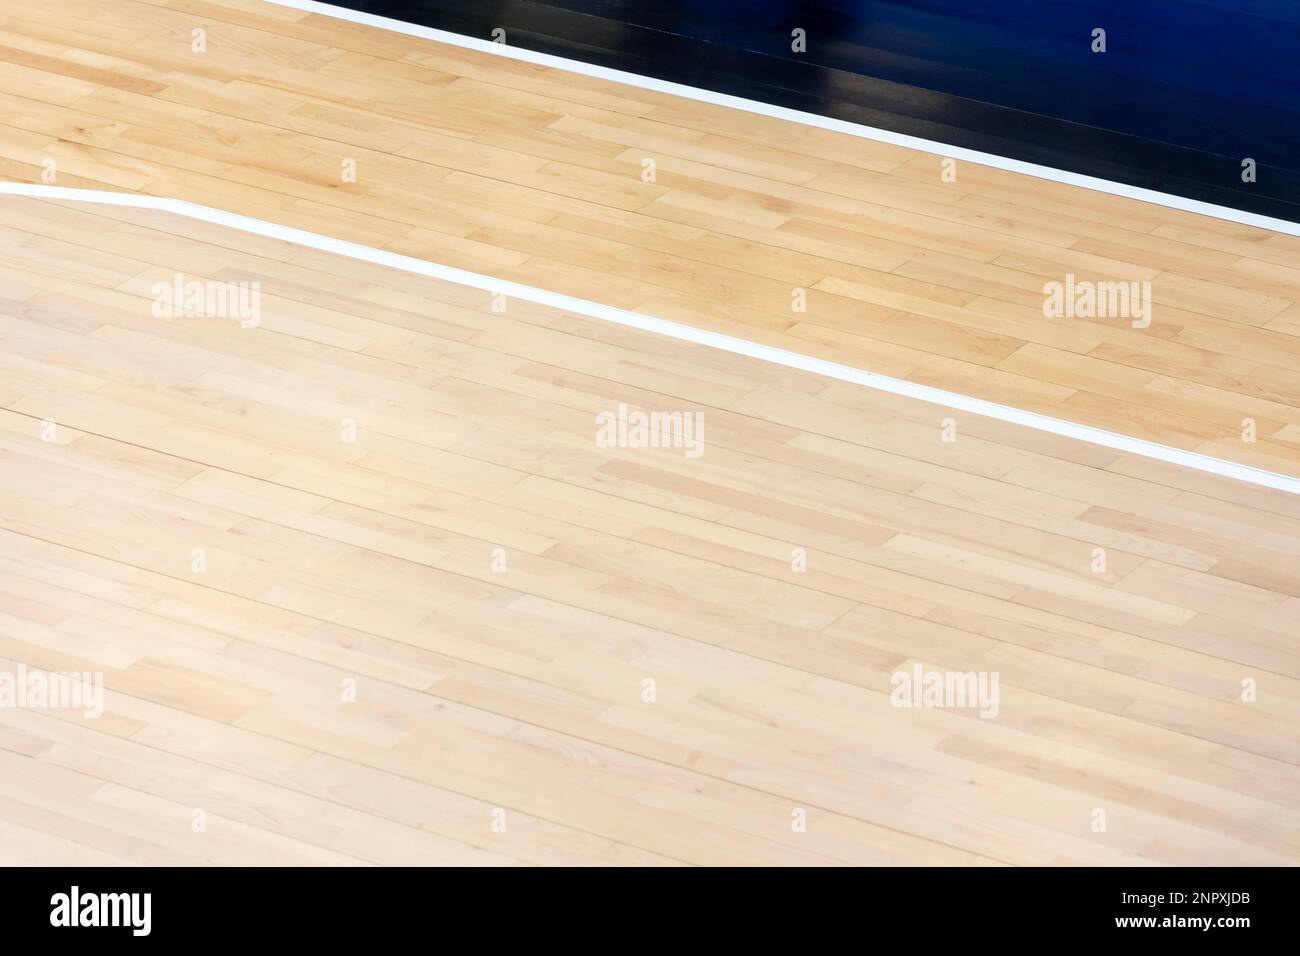 Holzboden Volleyball, Basketball, Badminton, Futsal, Handballplatz mit Lichteffekt. Holzfußboden der Sporthalle mit Markierungslinien auf Woode Stockfoto